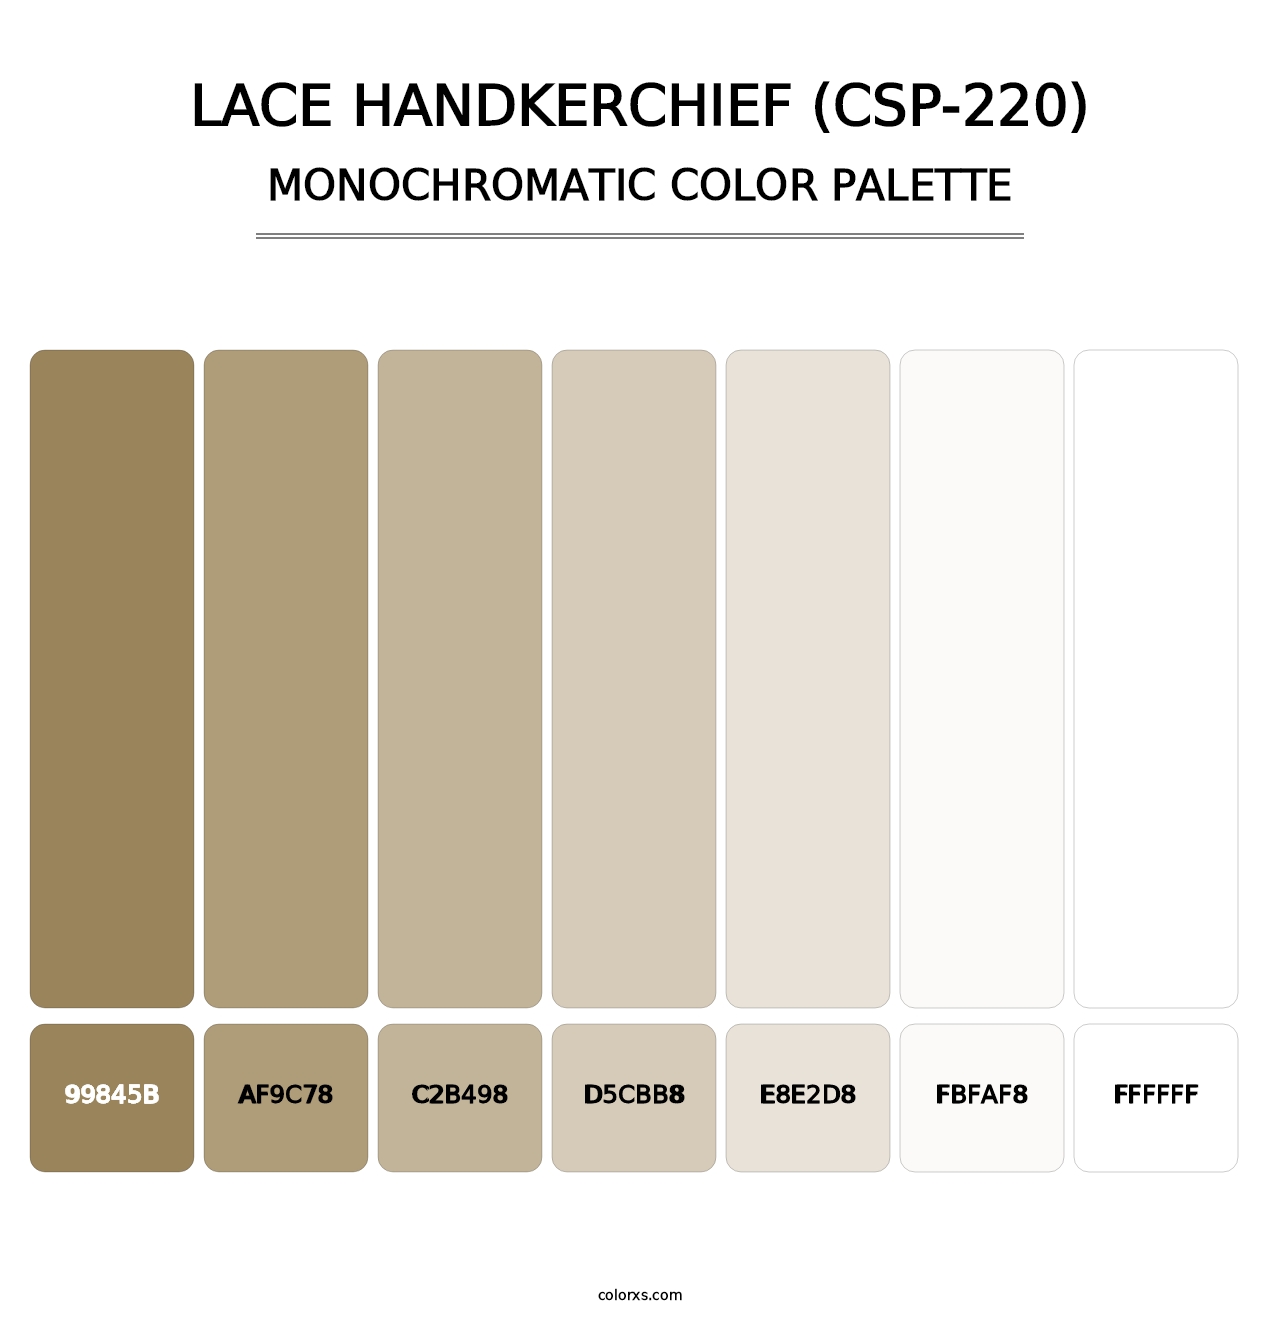 Lace Handkerchief (CSP-220) - Monochromatic Color Palette